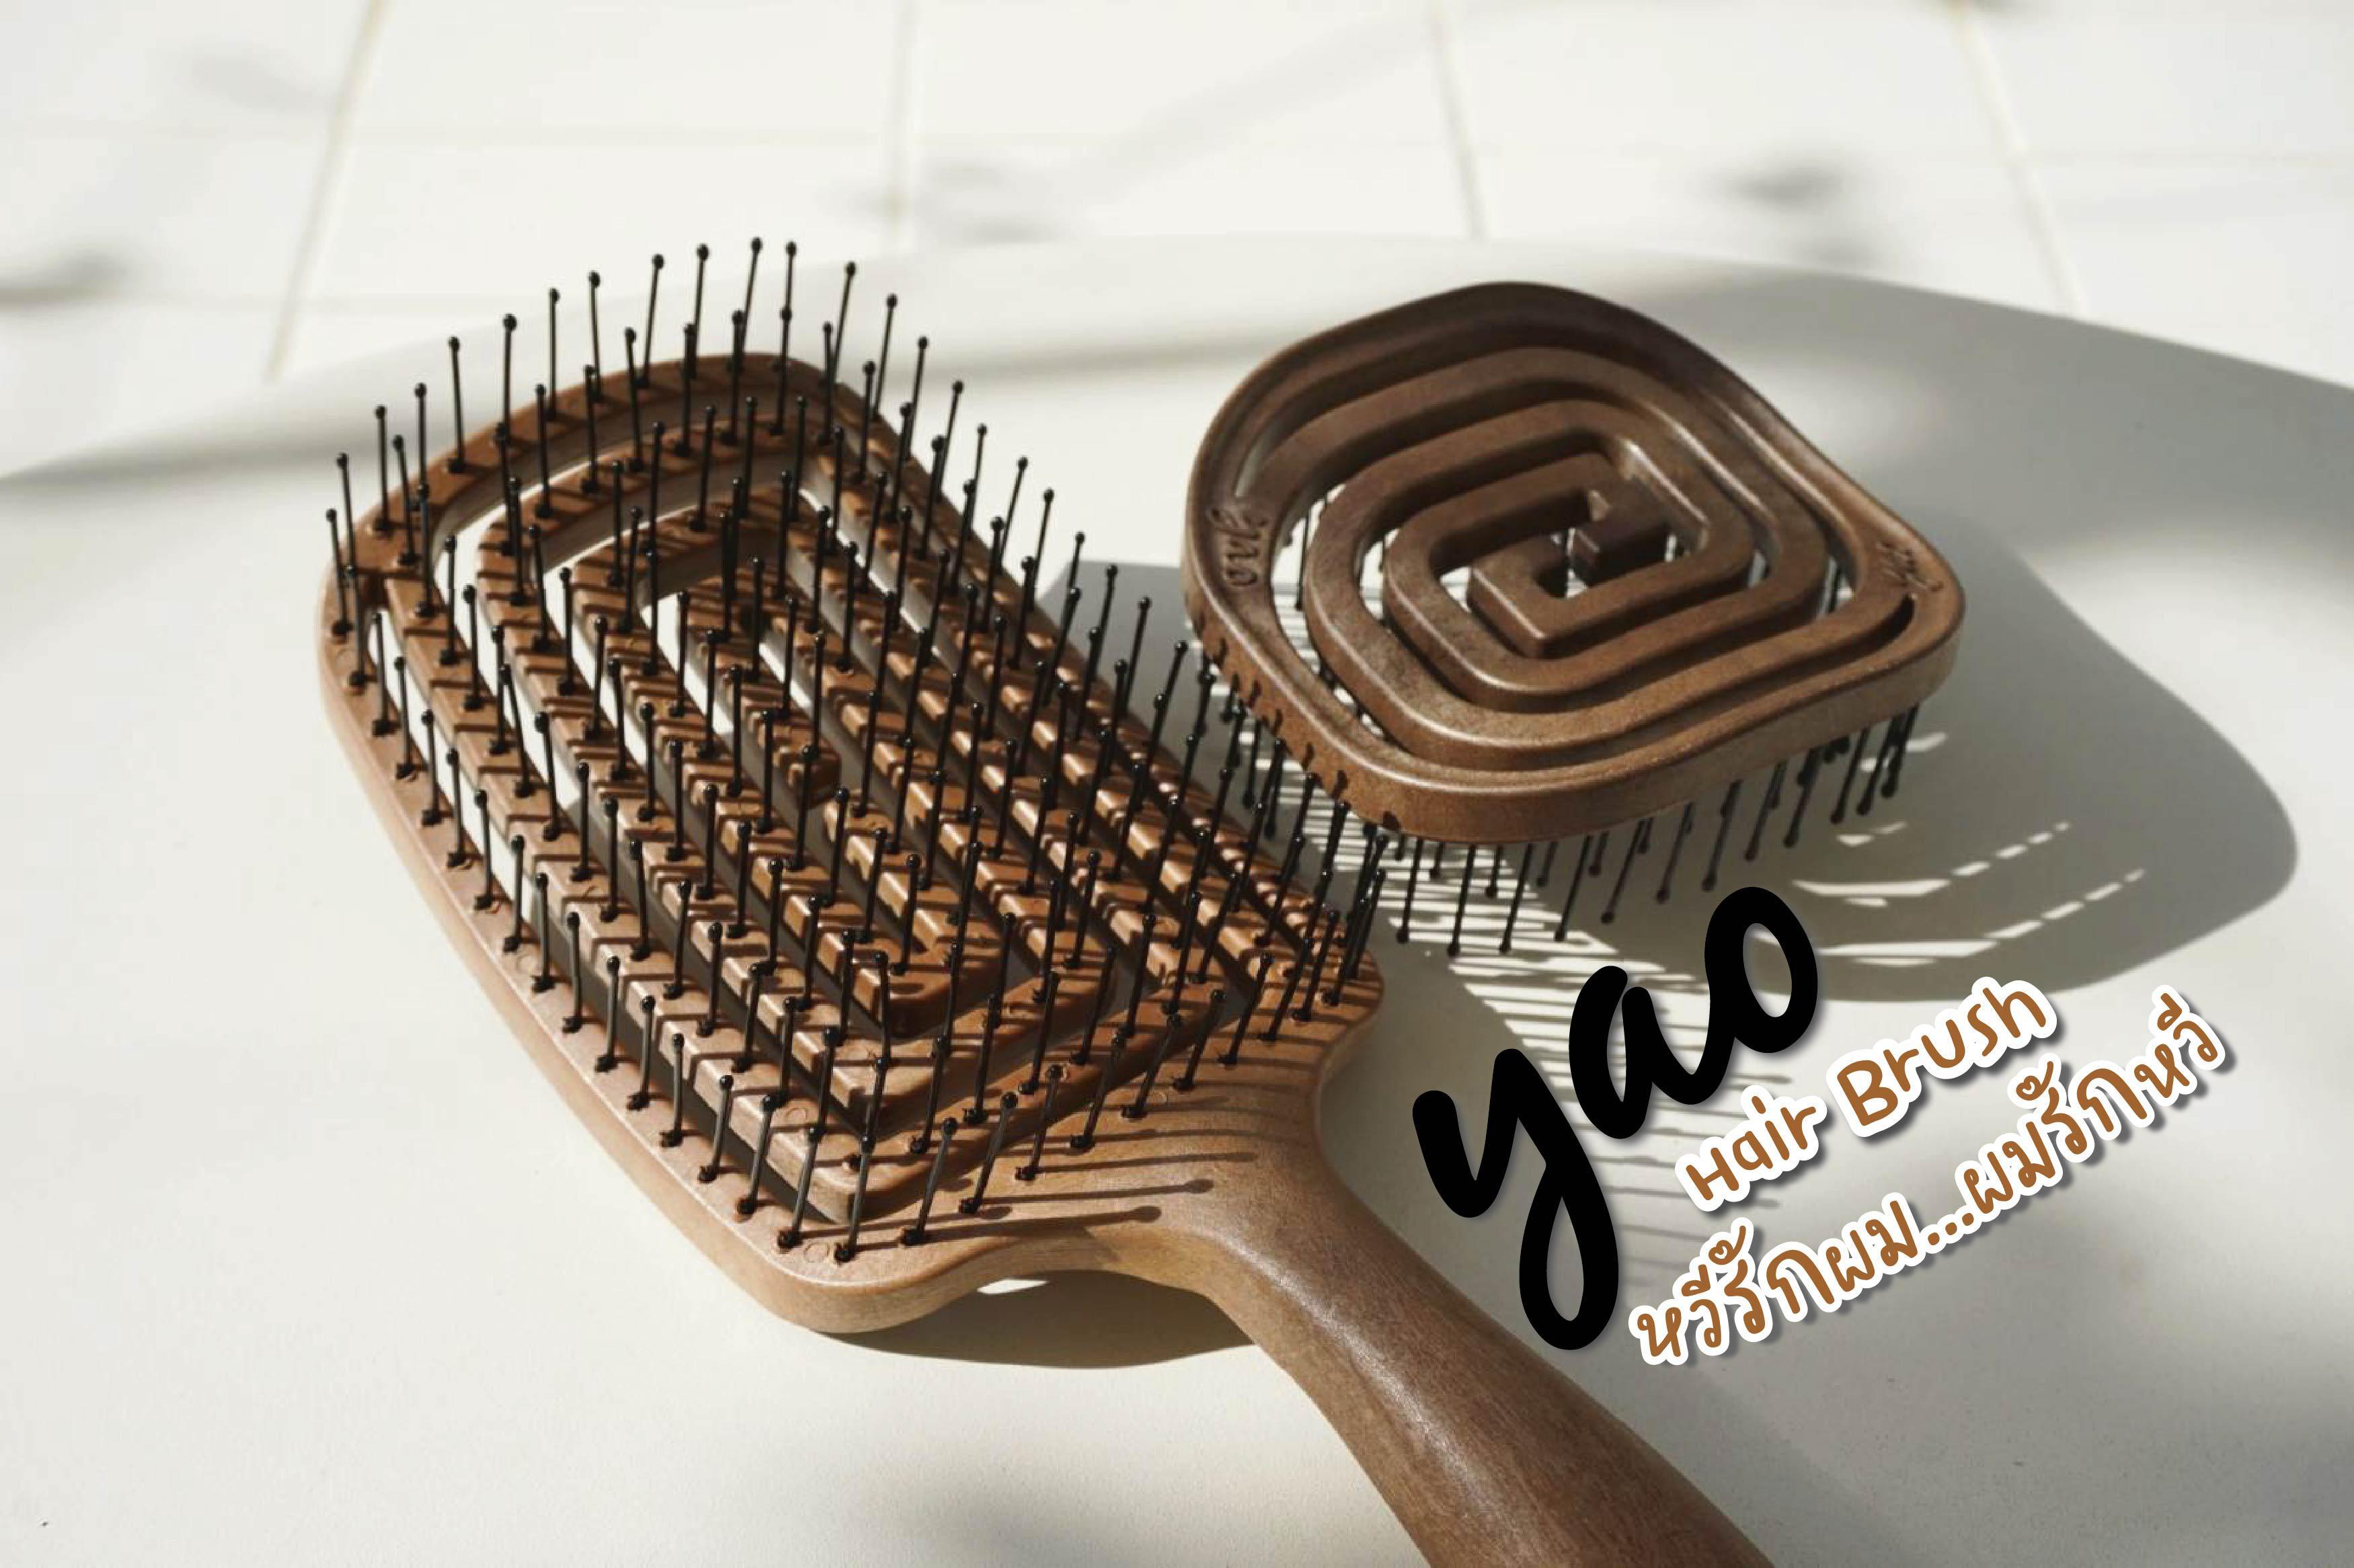 ภาพหน้าปก YAO Hair Brush “หวีรักผม...ผมรักหวี” ที่:0